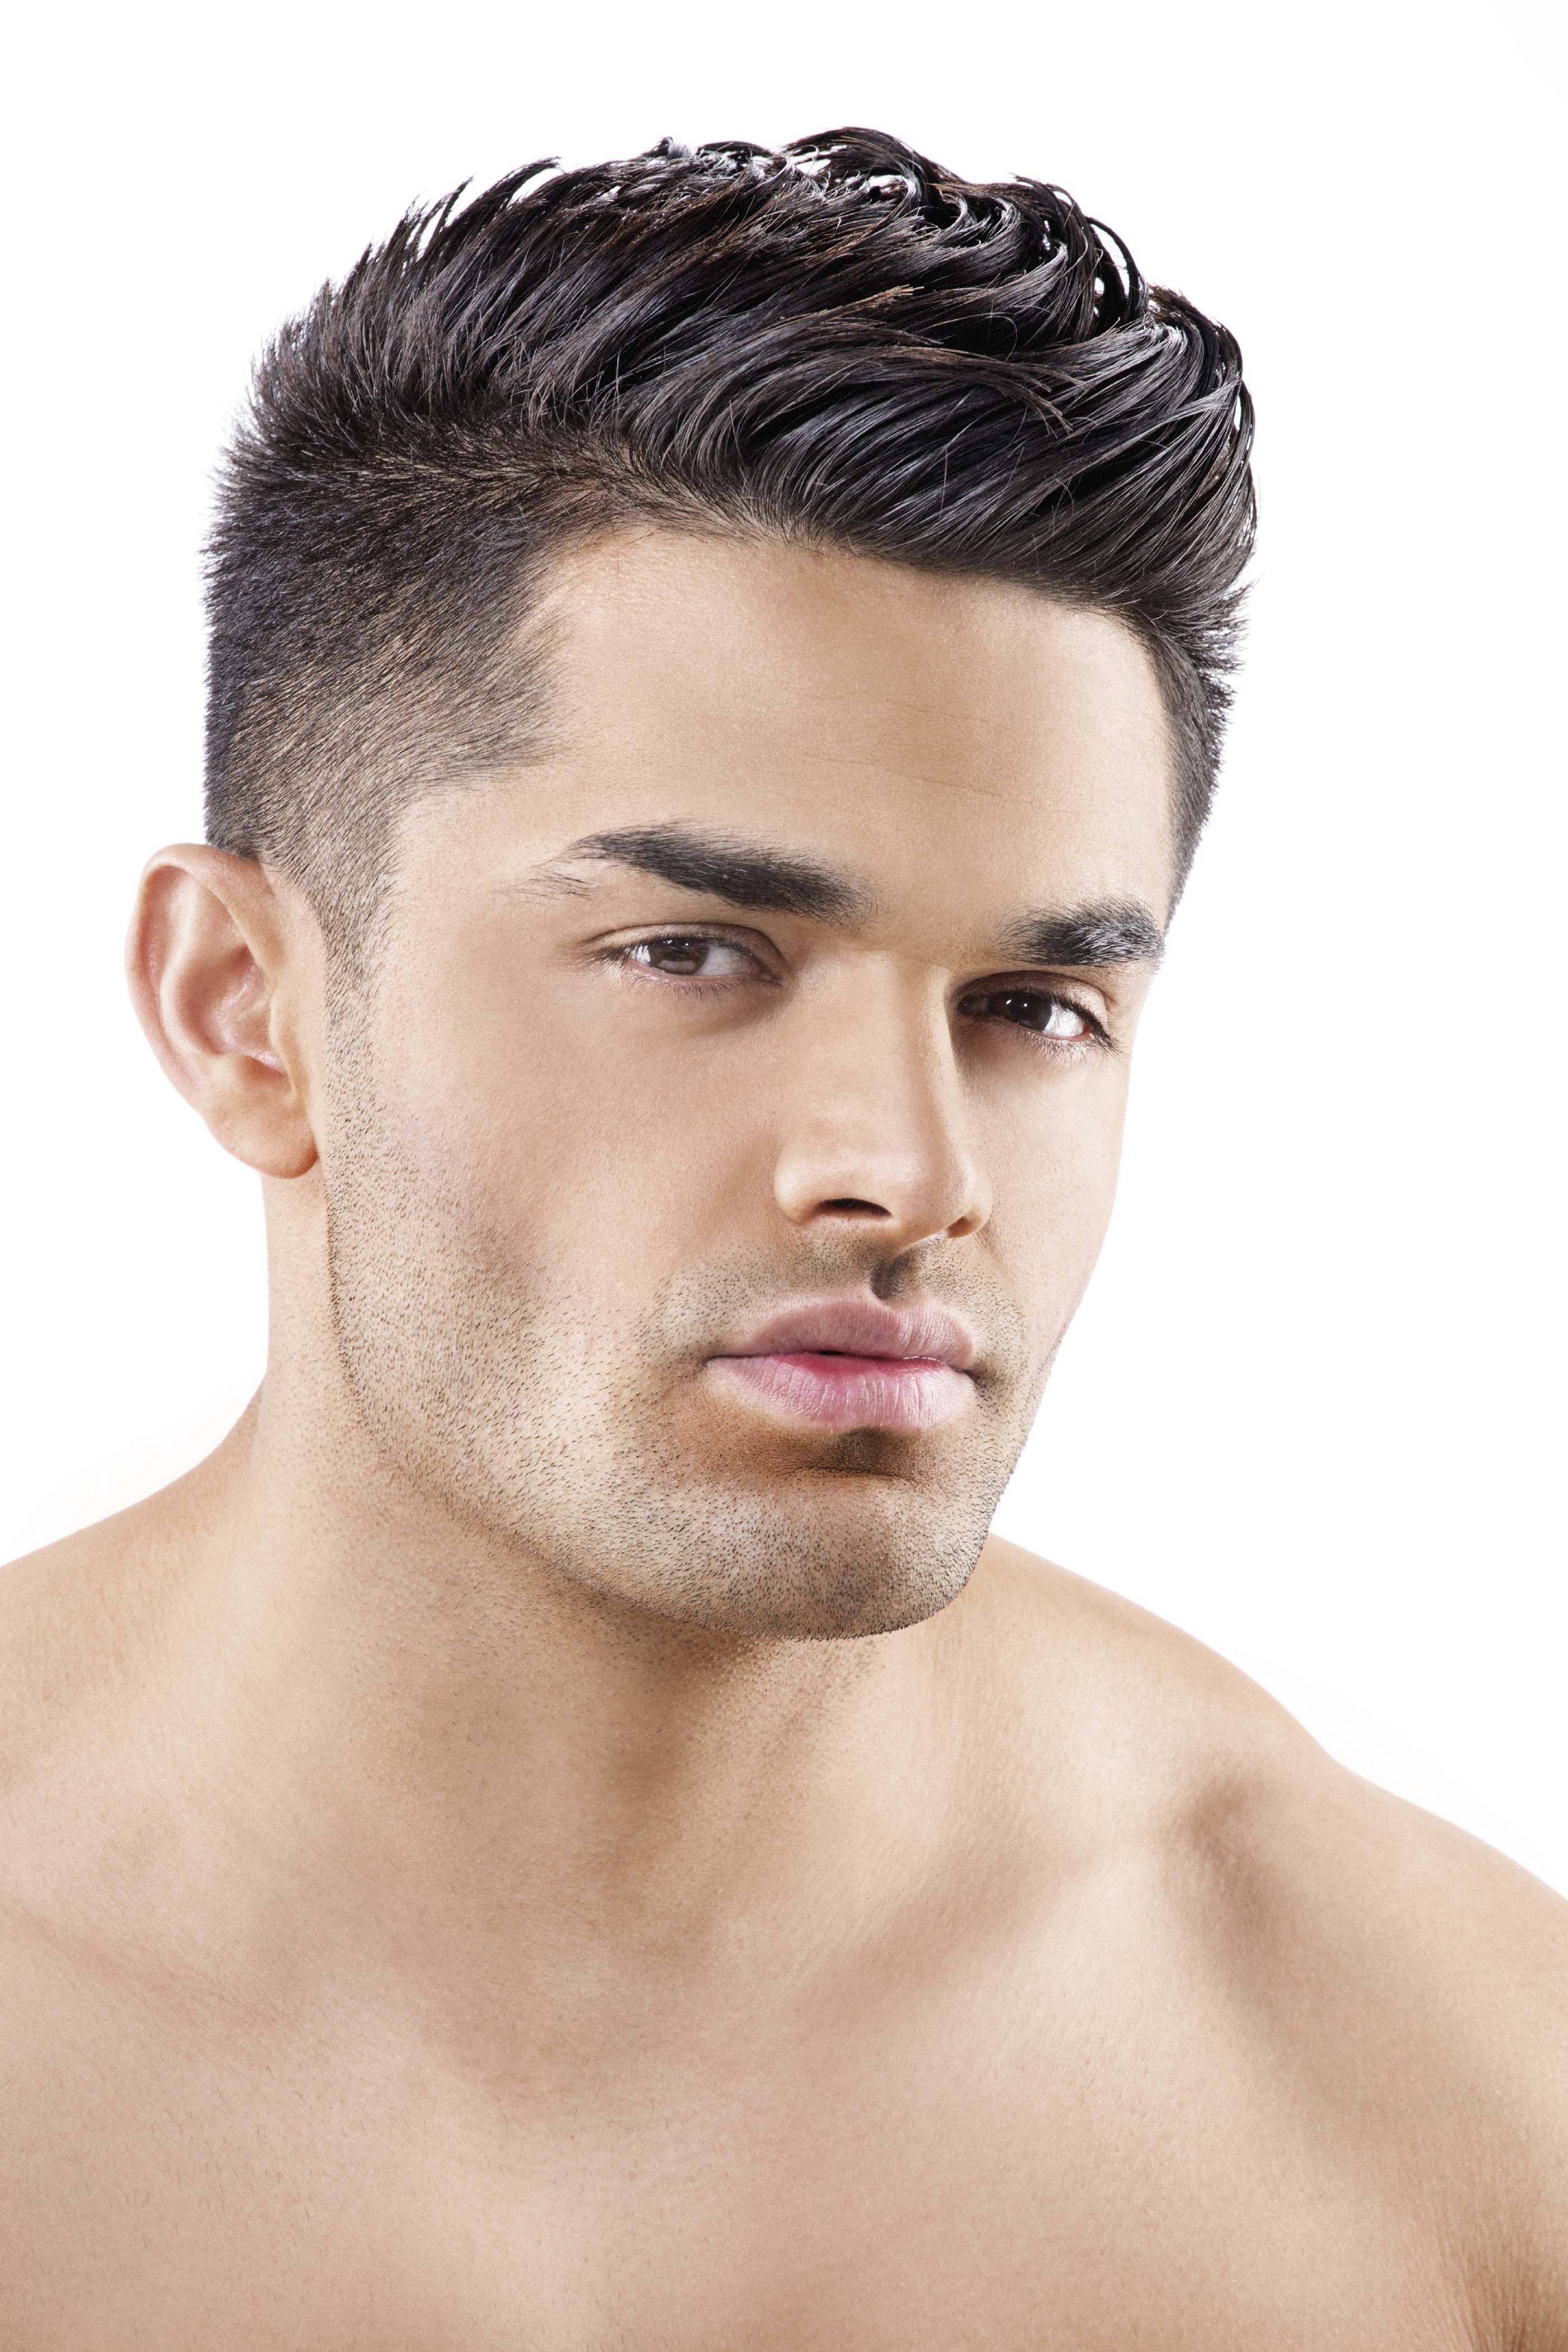 mejor corte de cabello para hombre cara redonda FormatoAPA.com: Reglas y No...